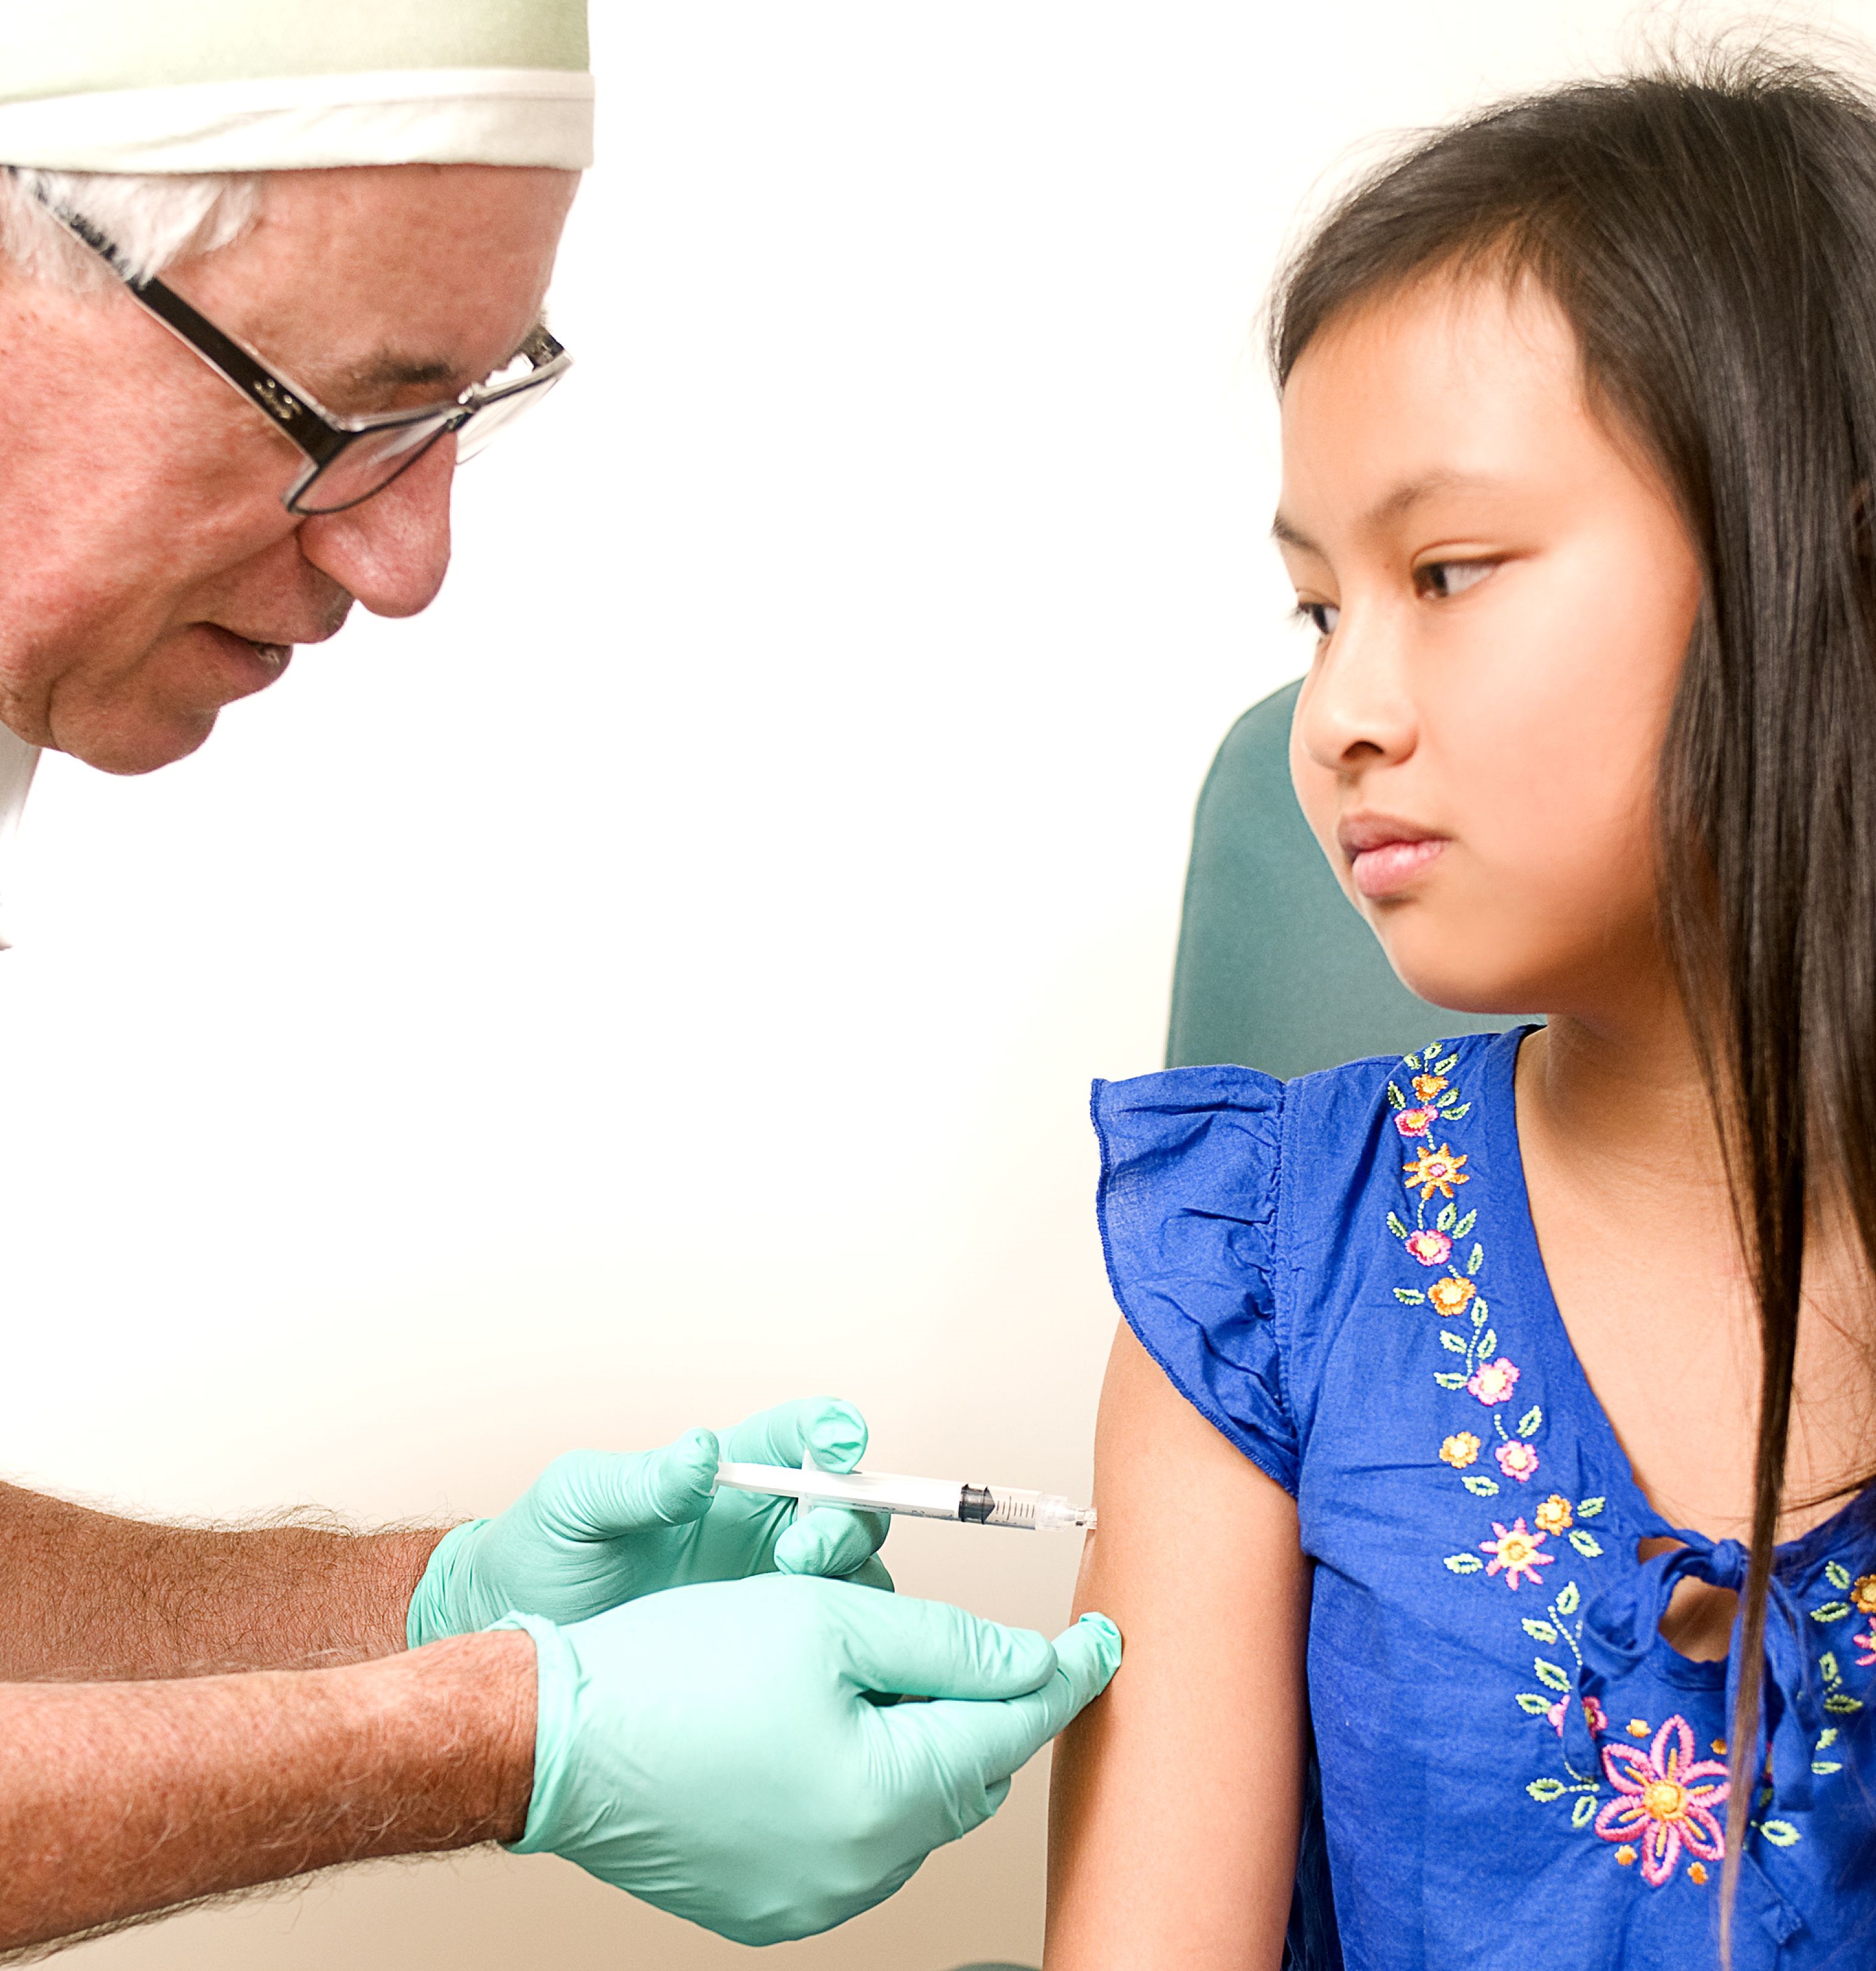 Vacunación de niña